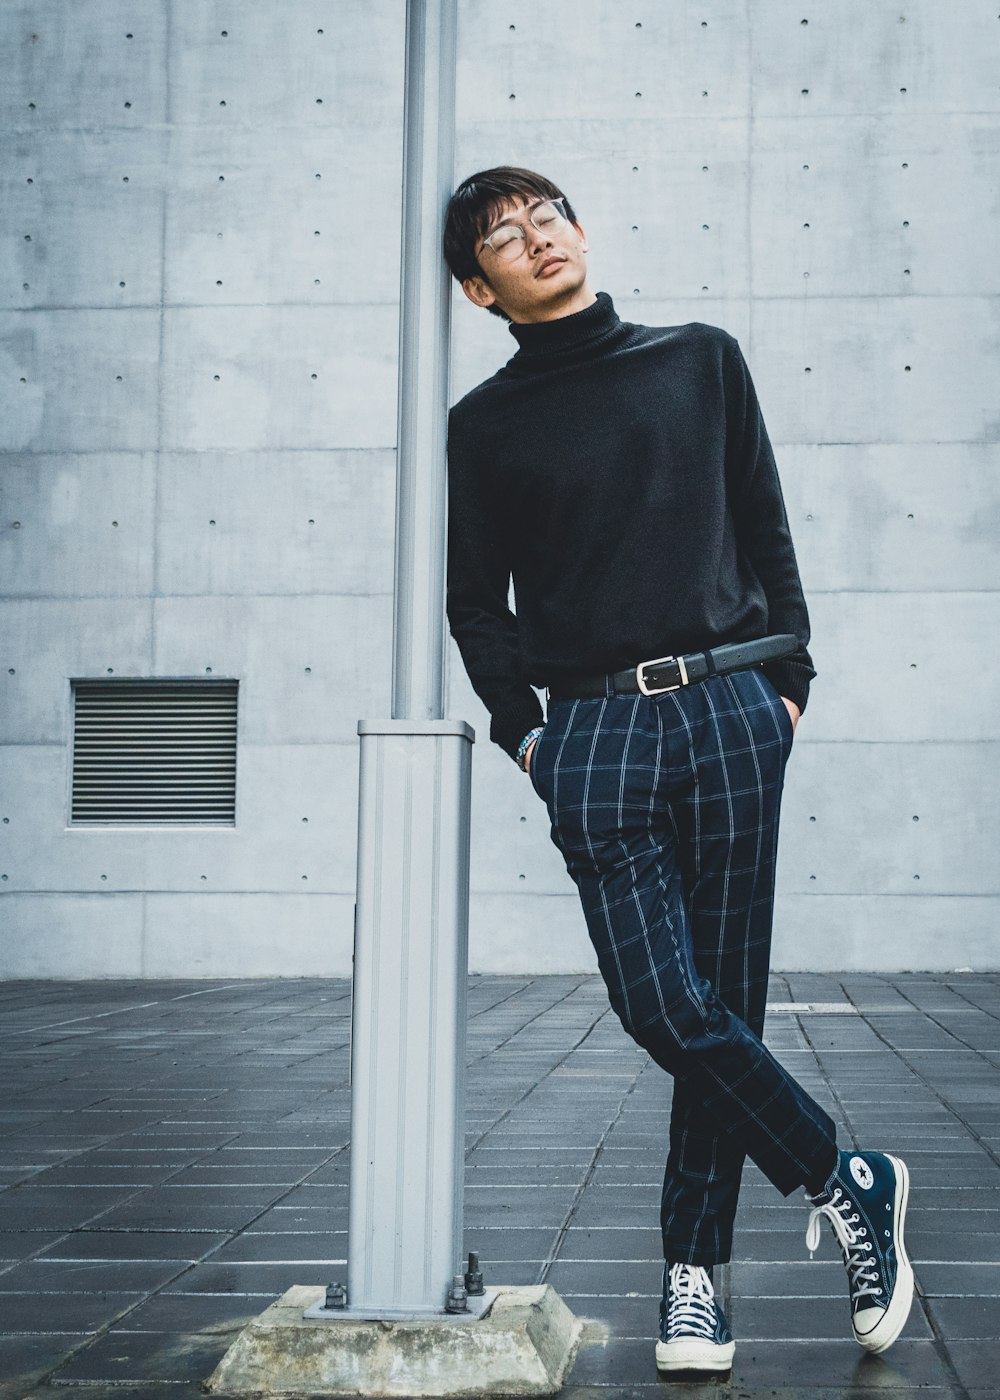 검은 스웨터와 파란색과 흰색 격자 무늬 바지를 입은 남자가 흰색 콘크리트 벽 옆에 서 있습니다.